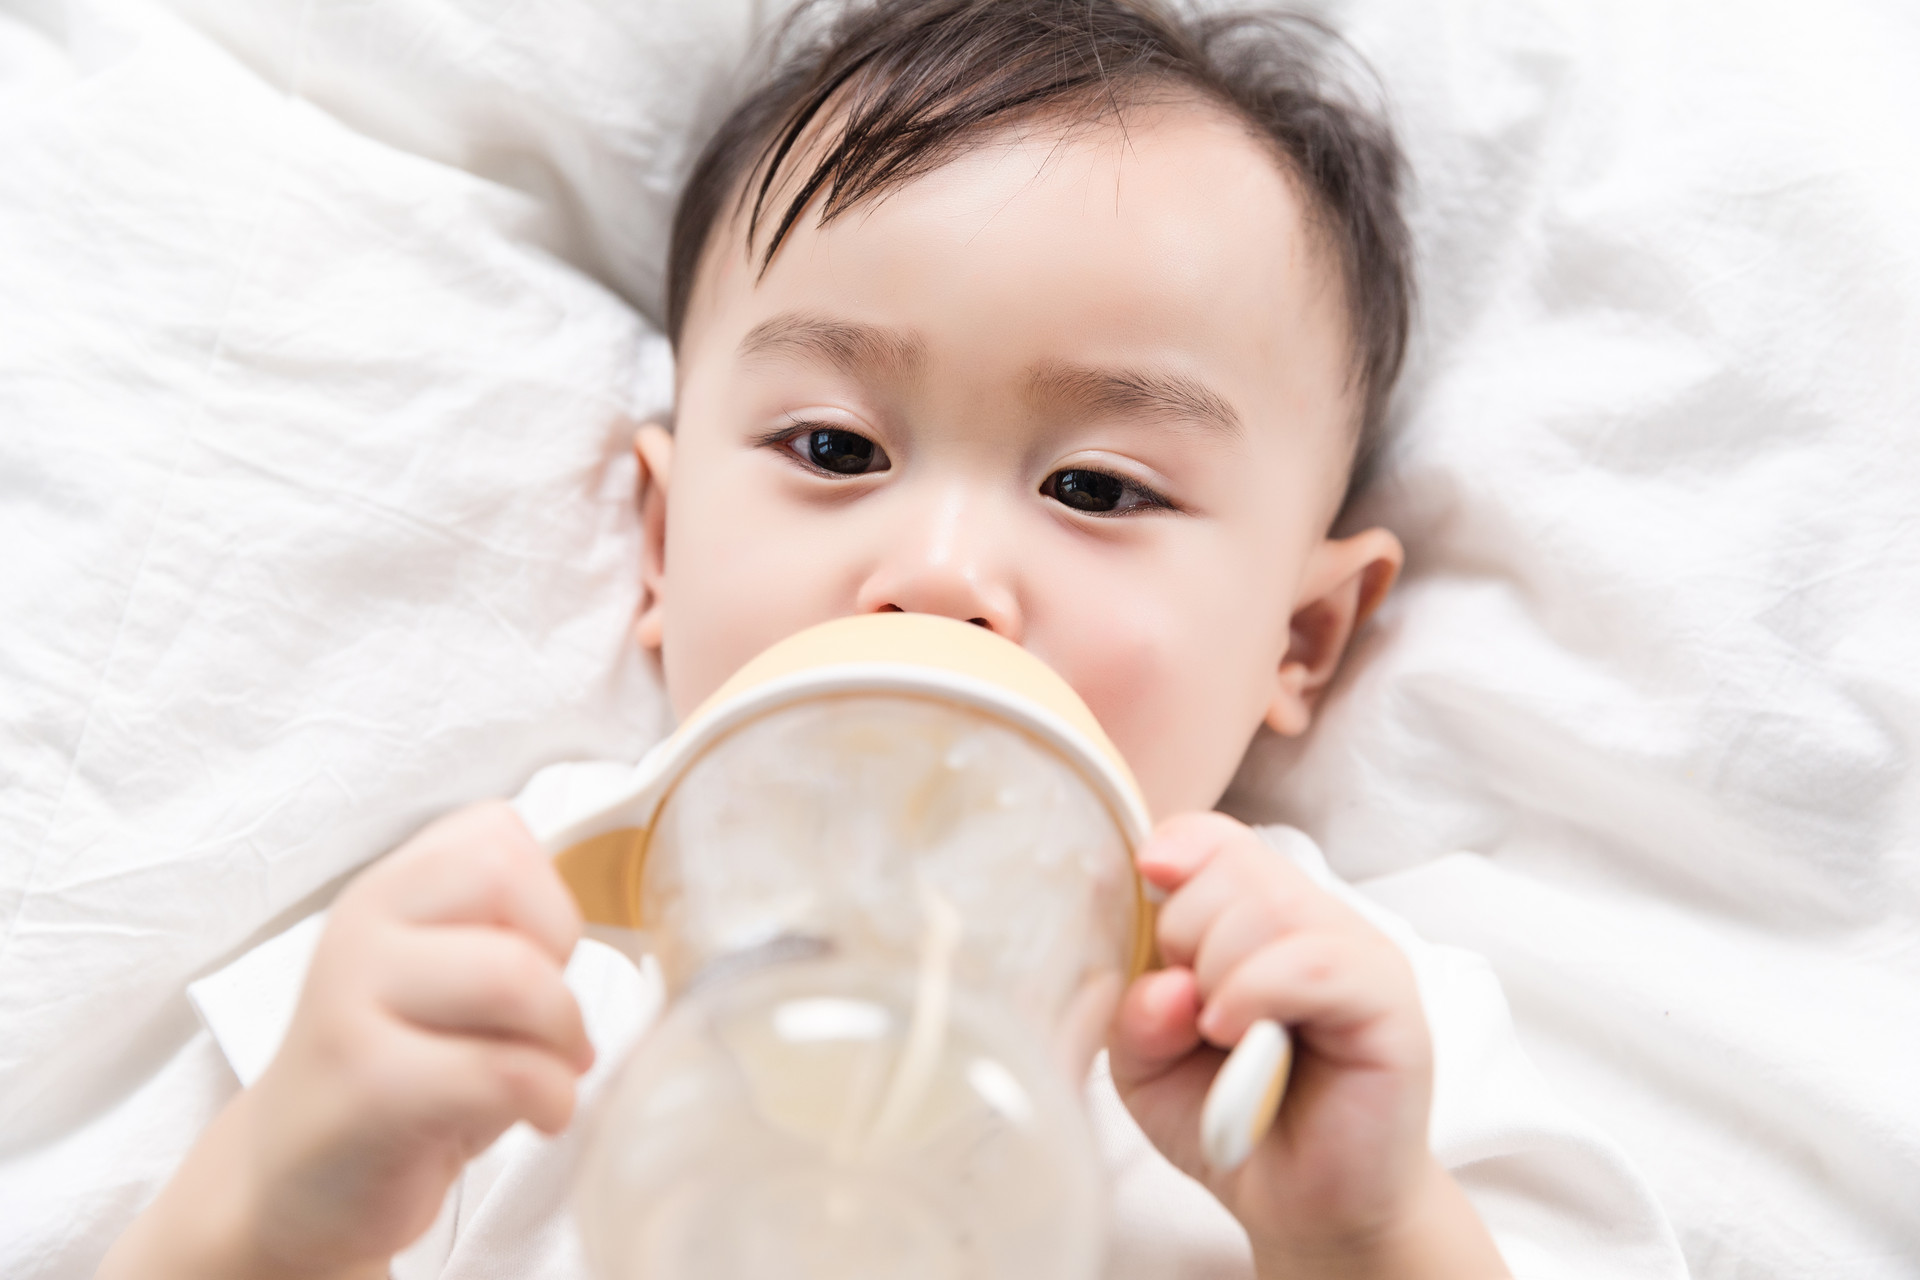 塑料奶瓶可能导致婴儿摄入塑料微粒